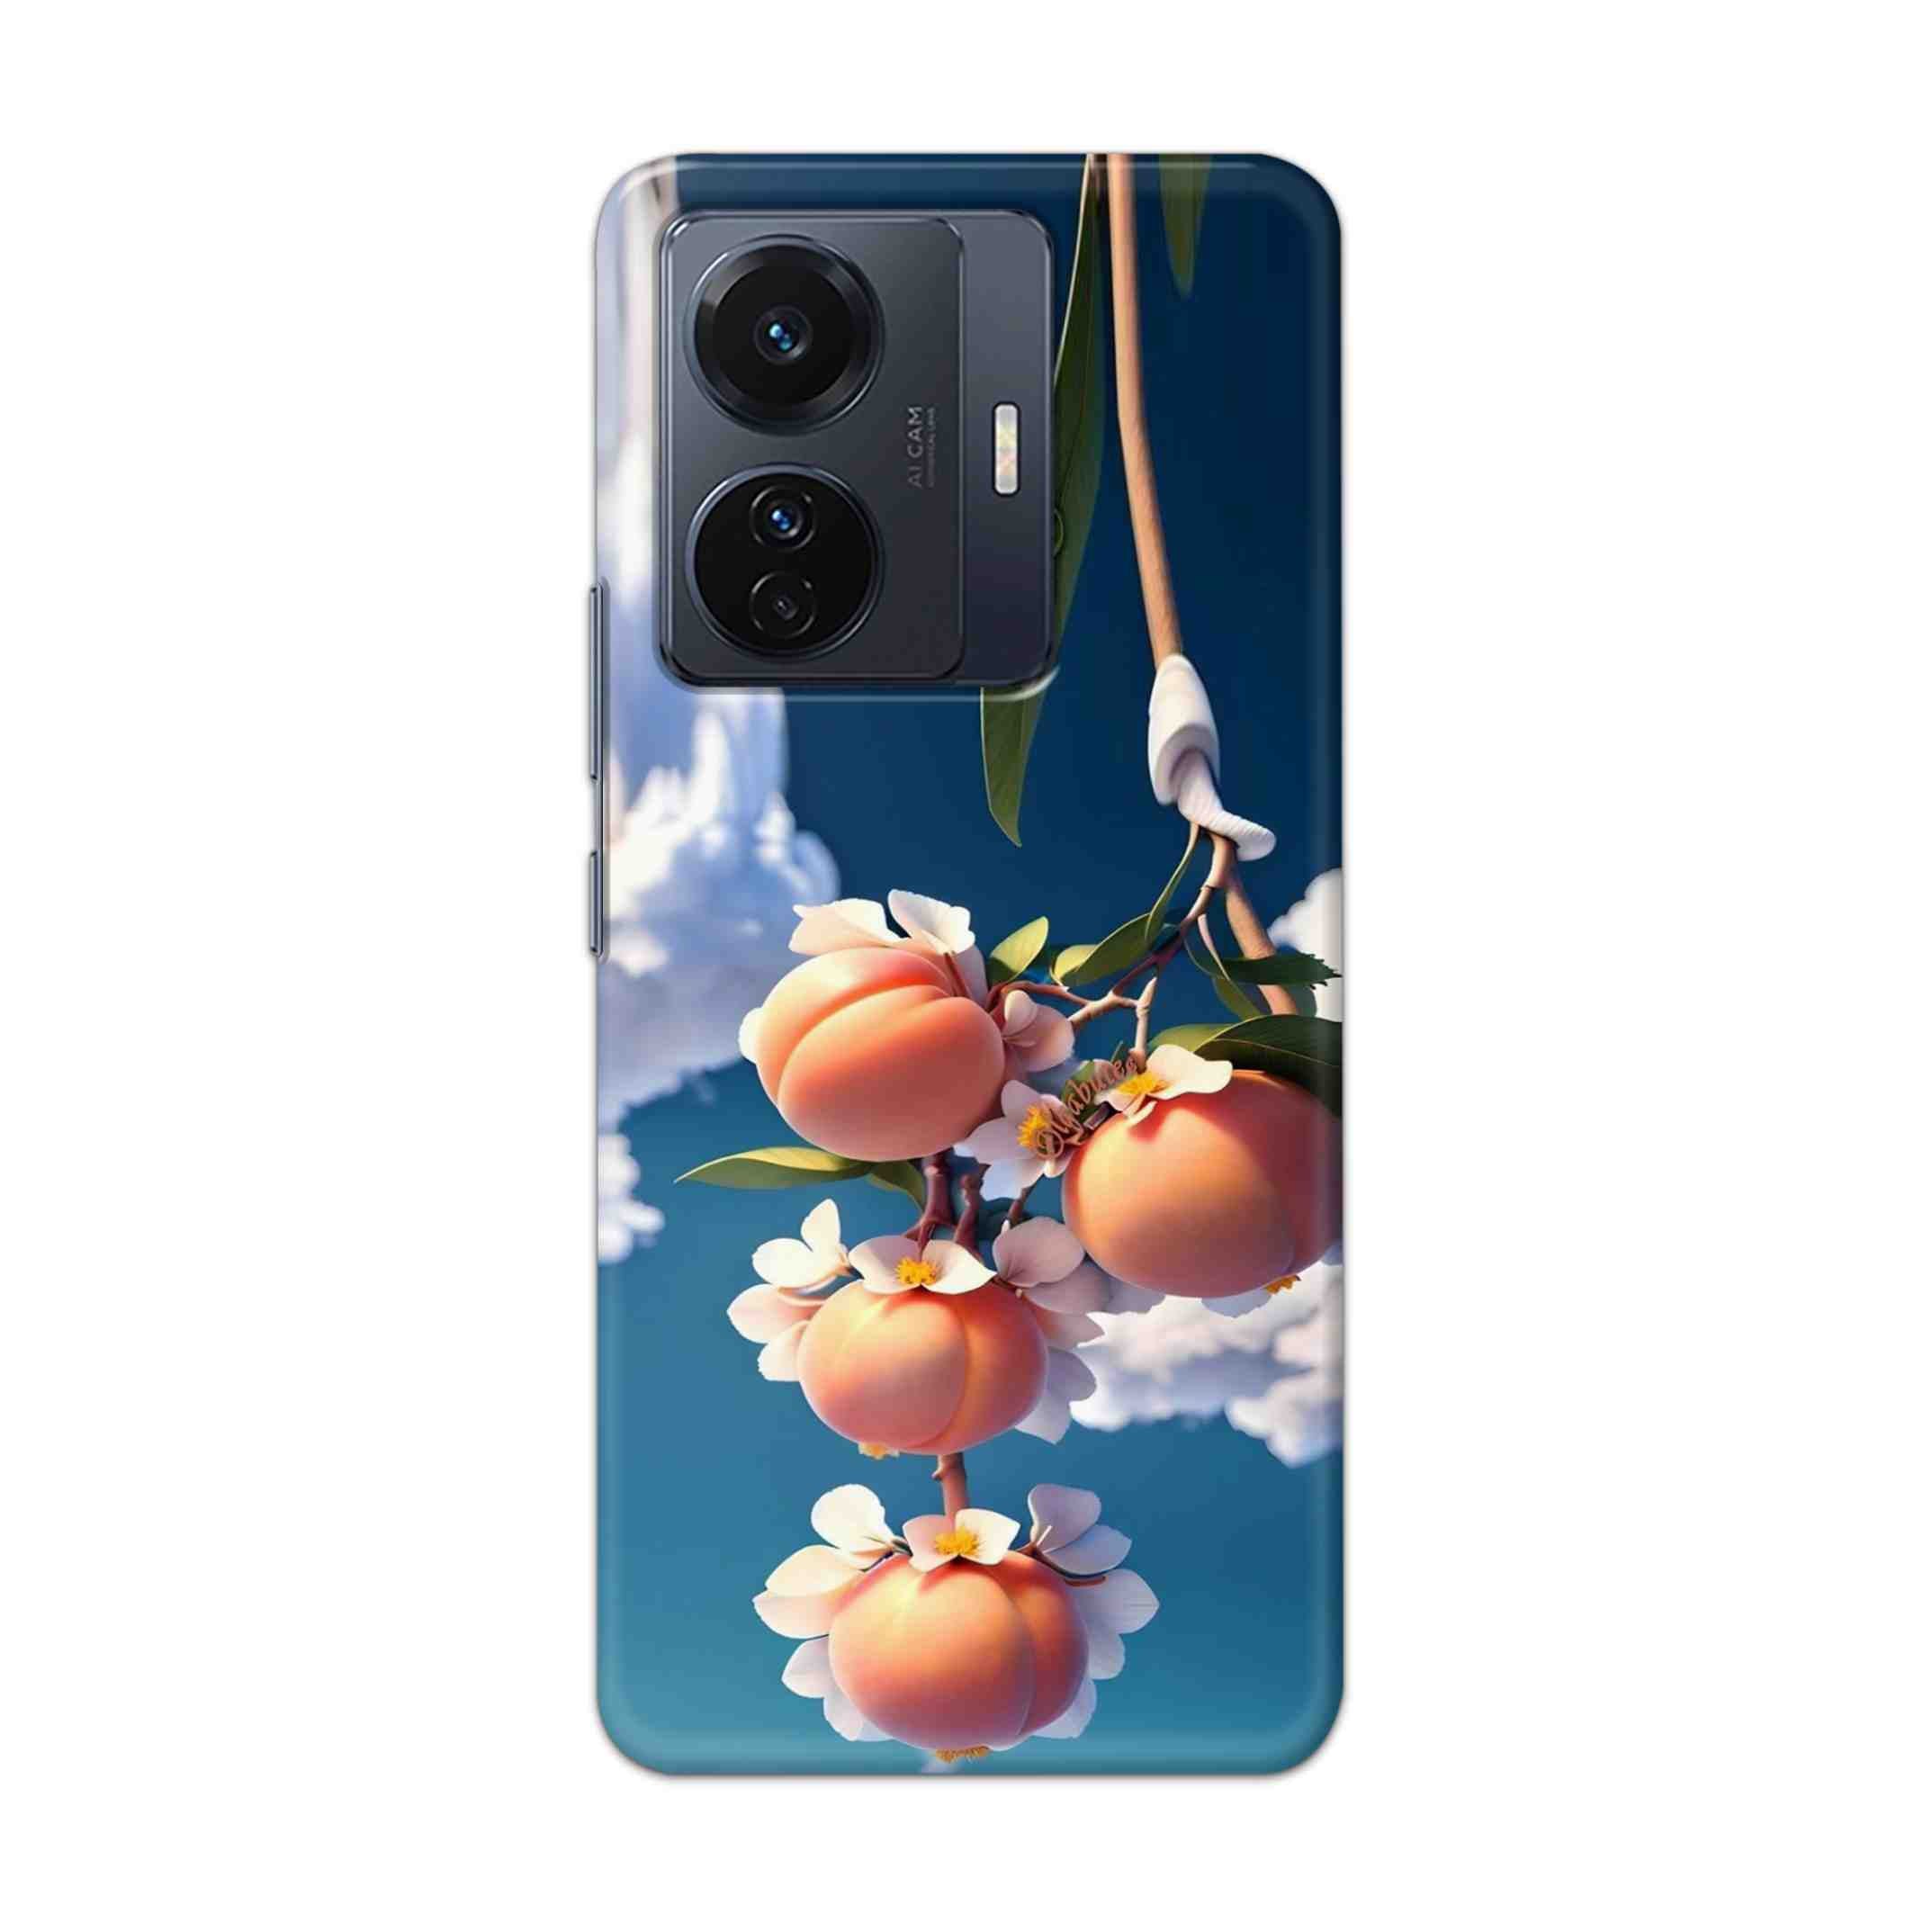 Buy Fruit Hard Back Mobile Phone Case Cover For Vivo T1 Pro 5G Online